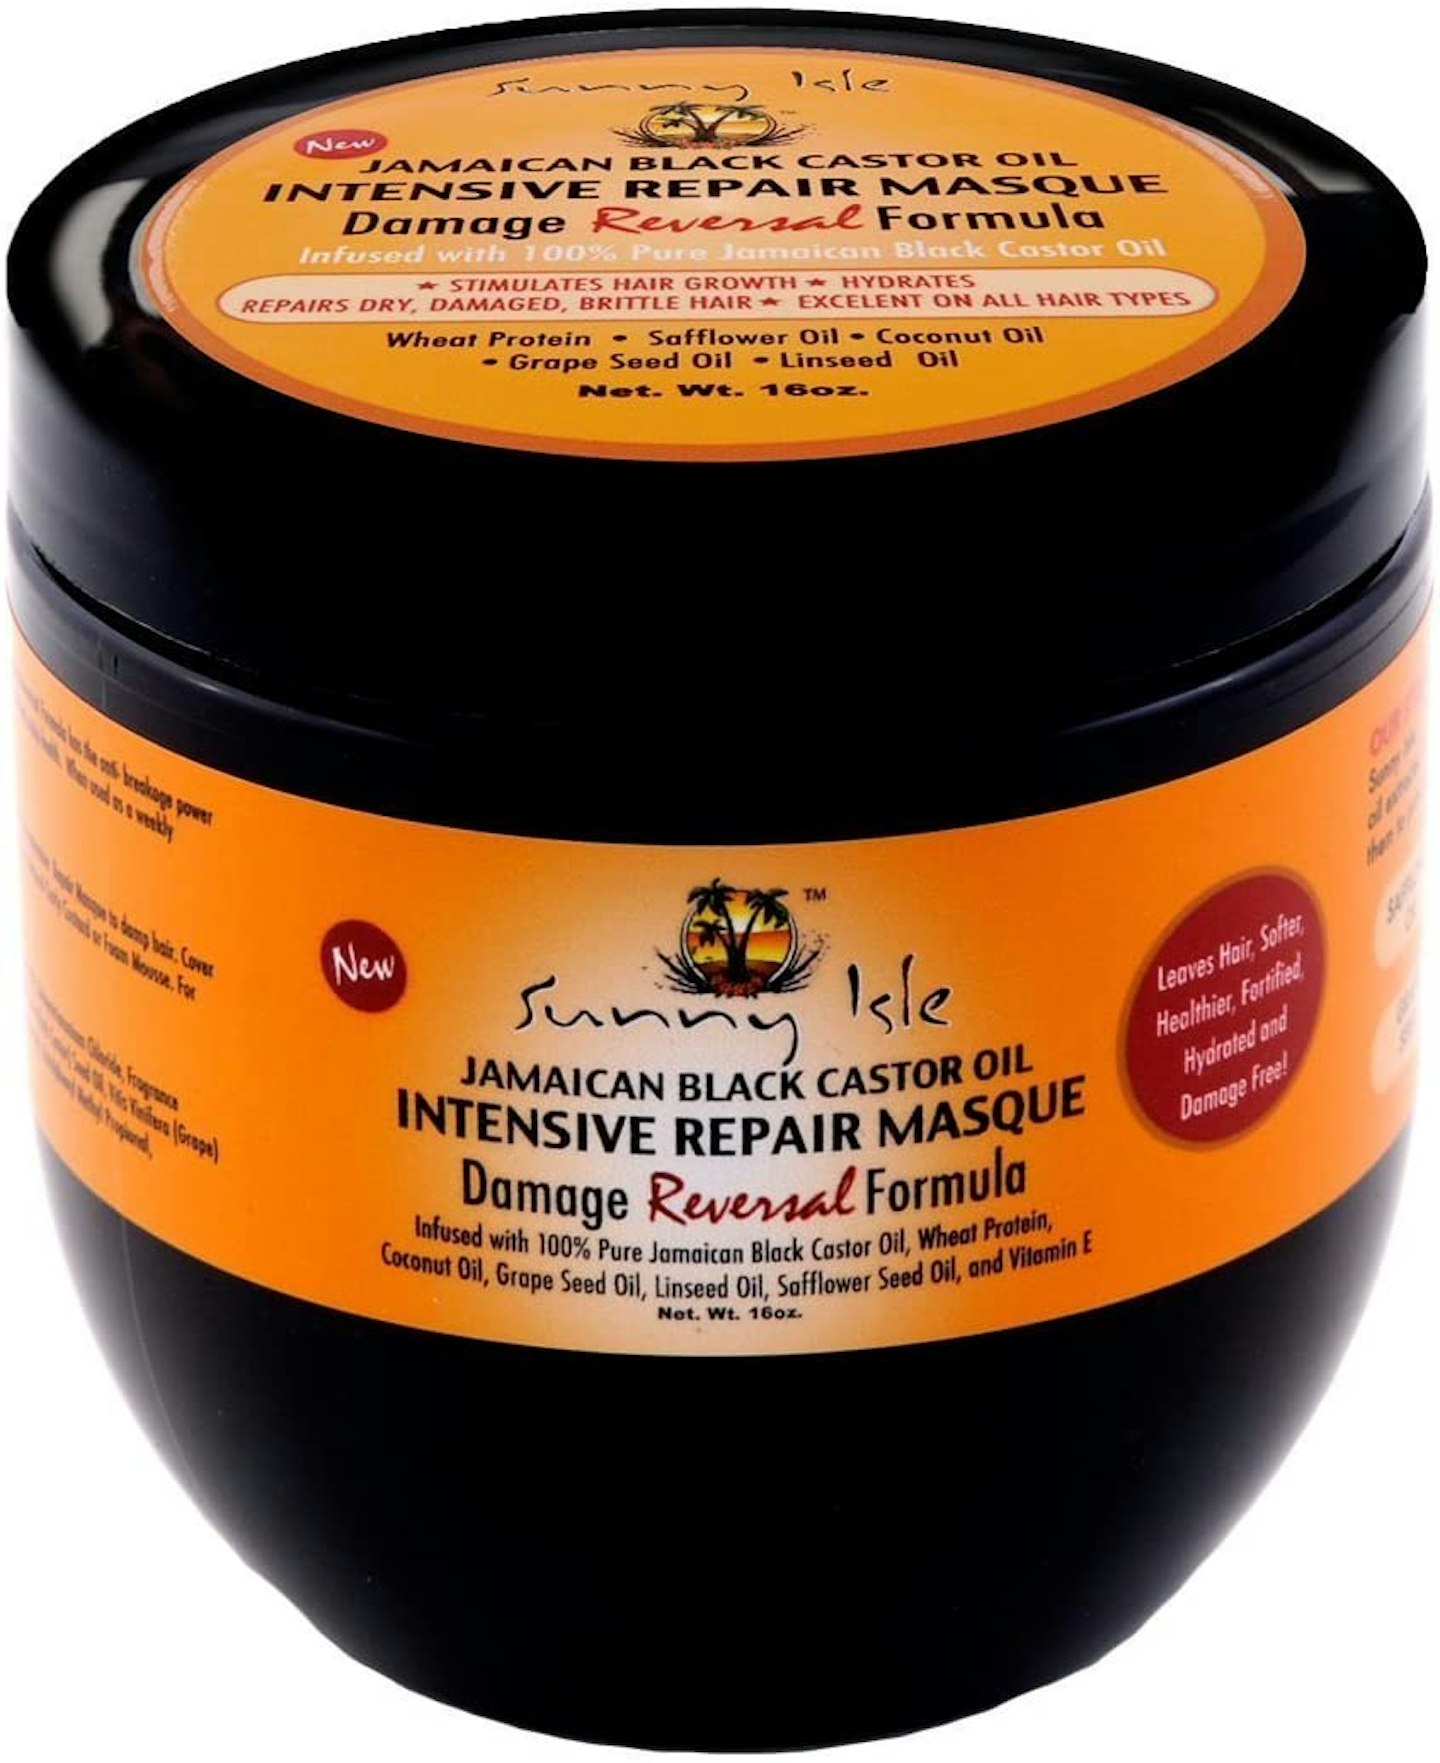 Sunny Isle Jamaican Black Castor Oil Intensive Repair Masque, 16 oz